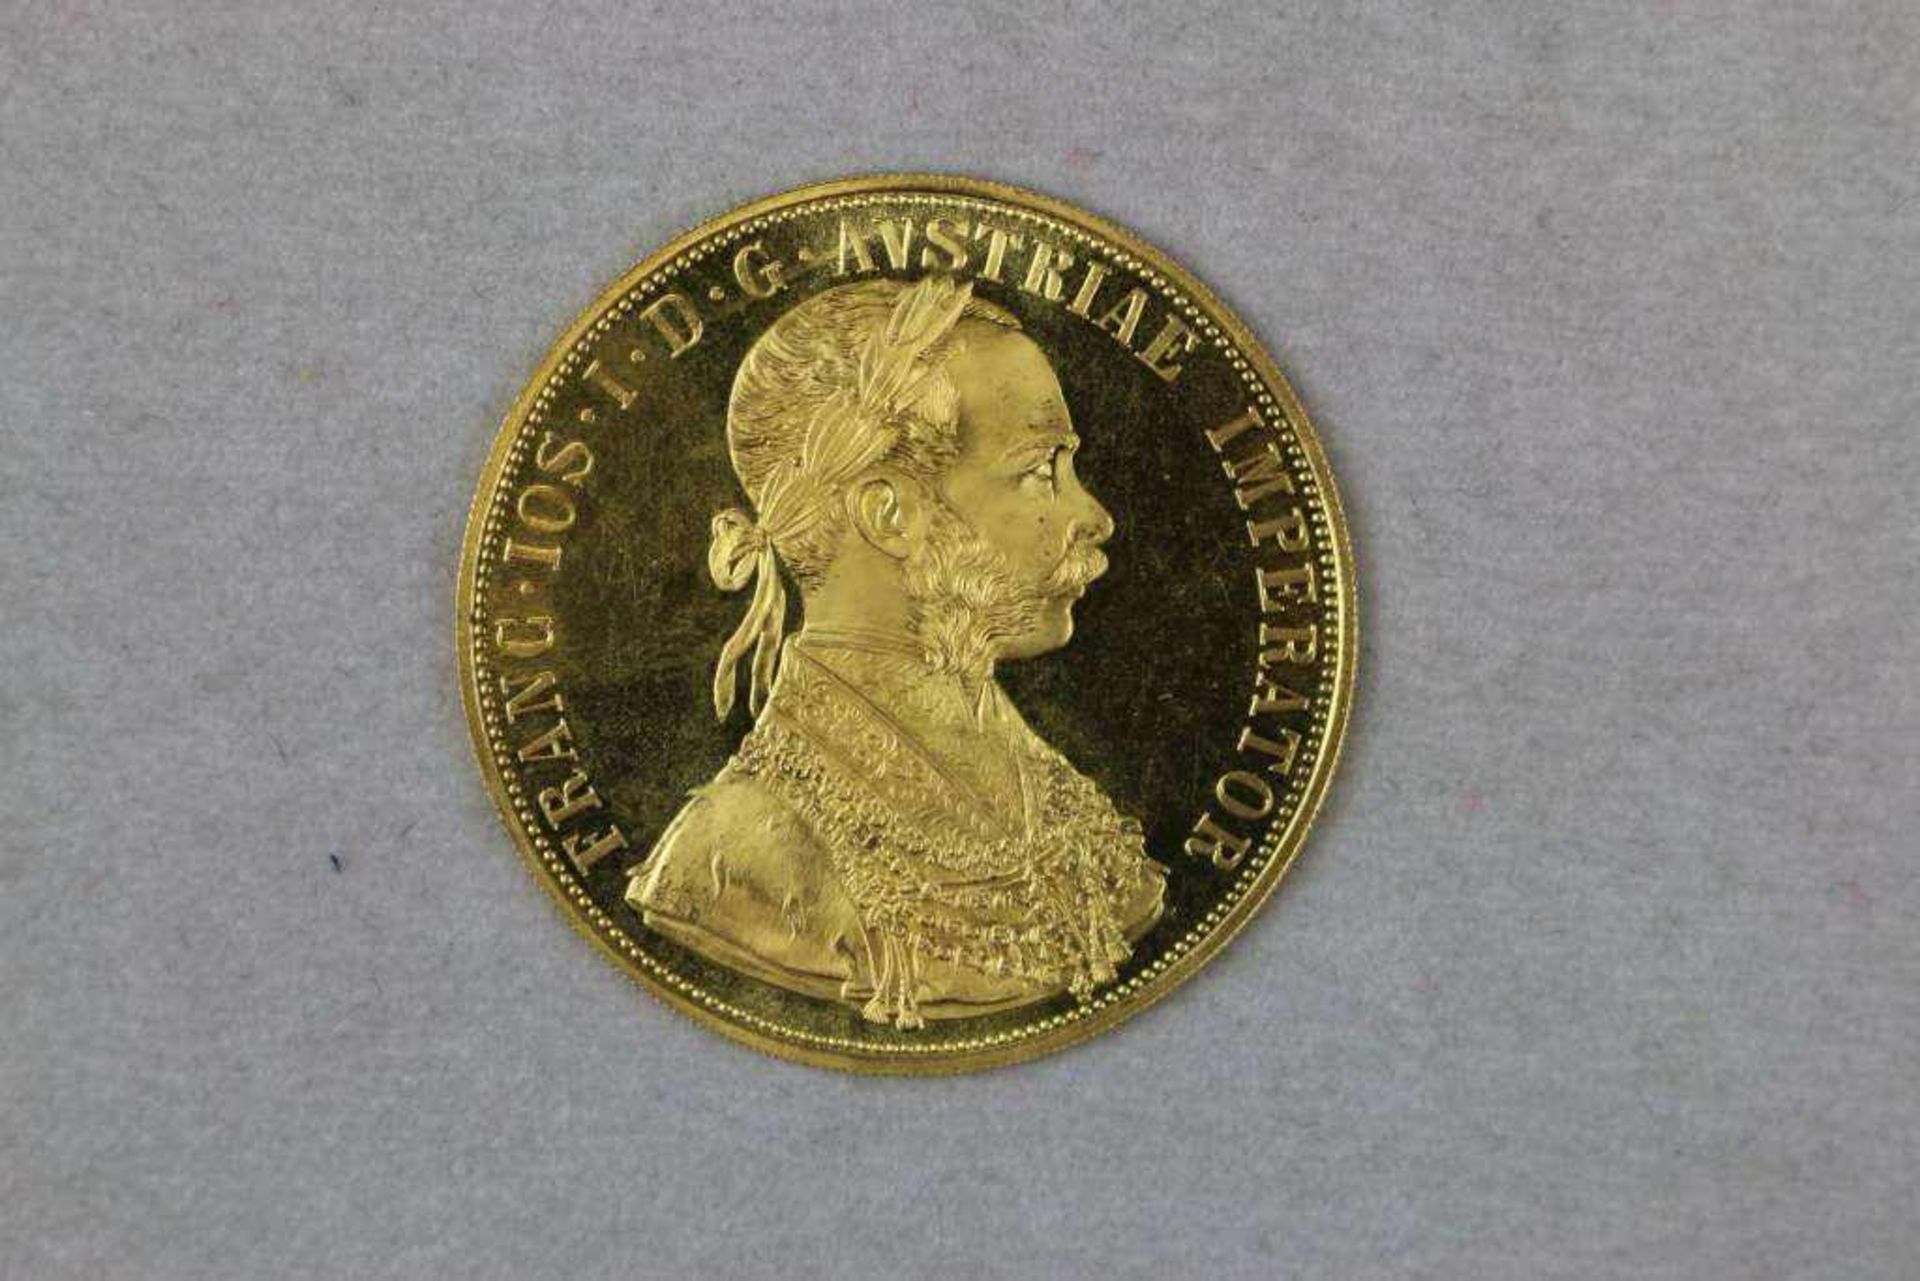 Goldmünze 4 Dukaten Österreich Kaiser Franz Joseph Golddukat 1915, Bruttogewicht: 13,963 g,